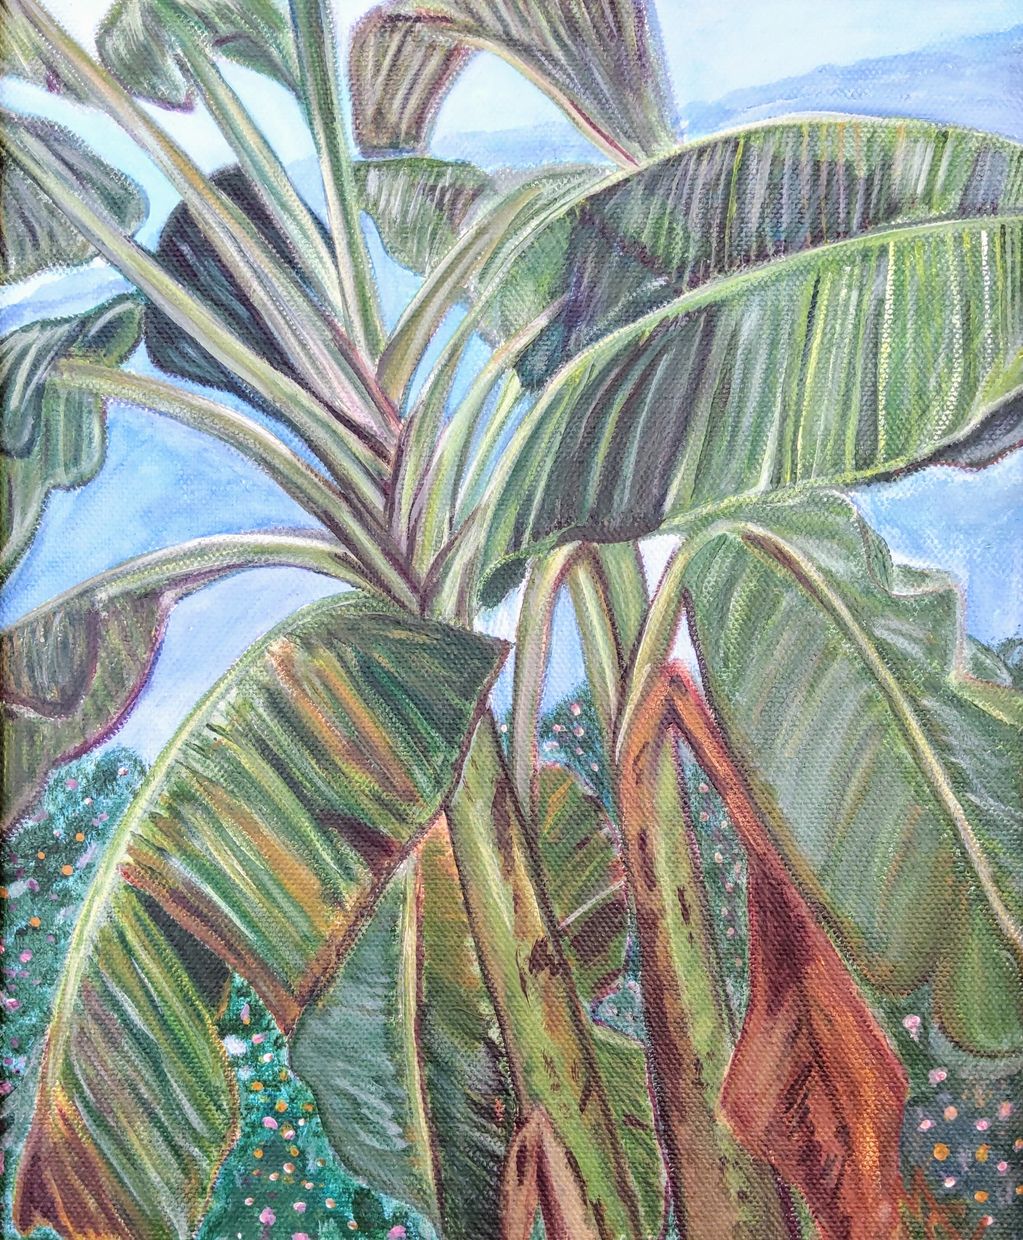 “El platanal” / “Banana grove”
2015
Acrylic on canvas / Acrílico sobre tela
40cm x 35cm 

